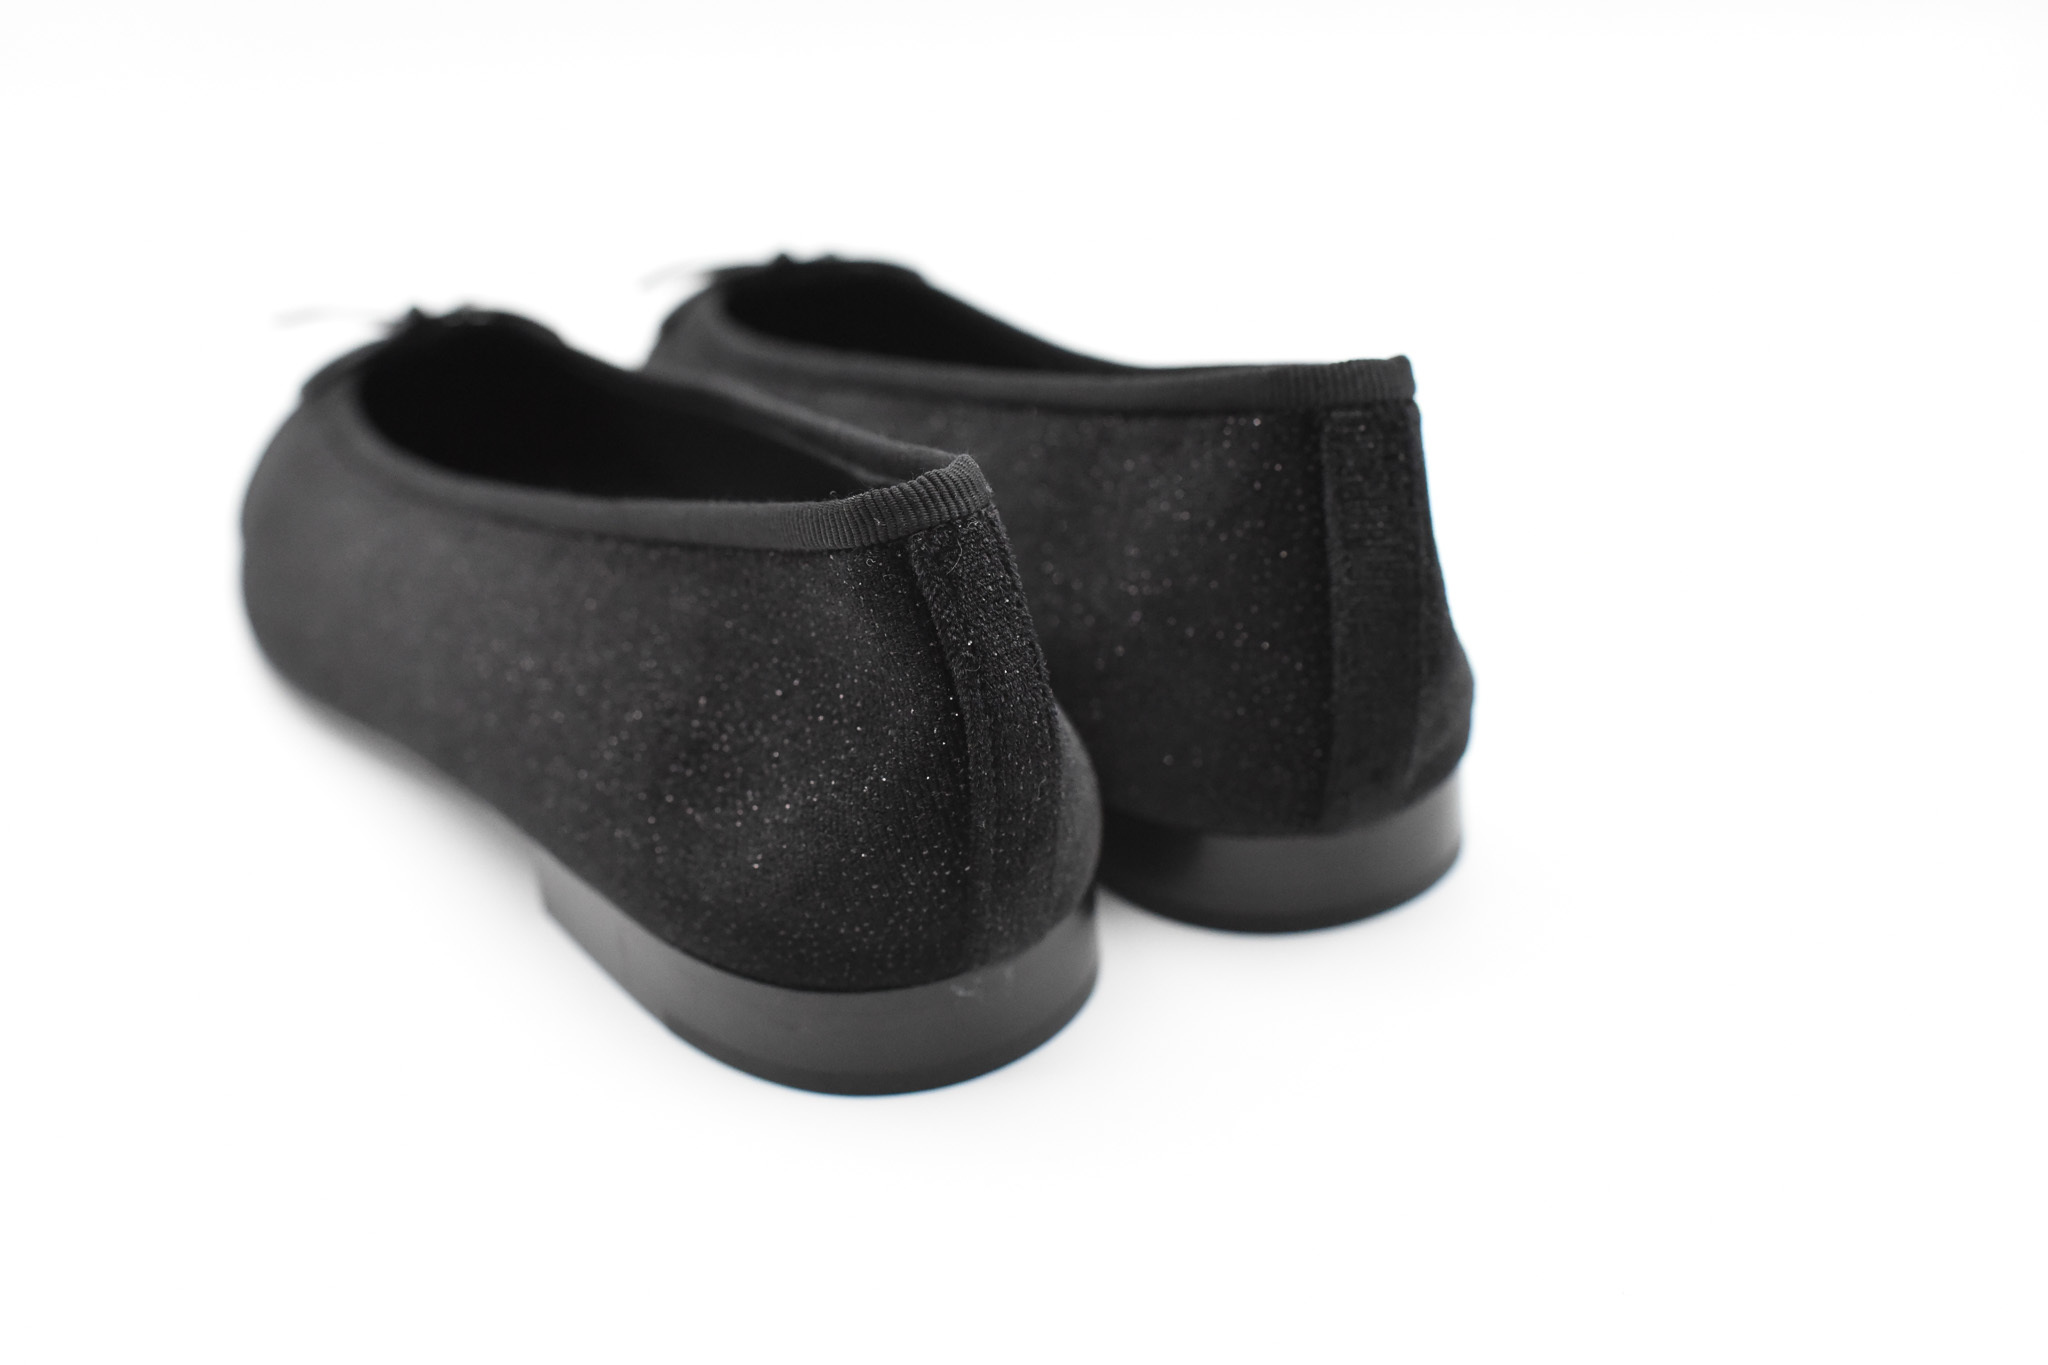 Chanel Shoes Ballet Flats, Black Velvet, Size 40, New in Box GA006